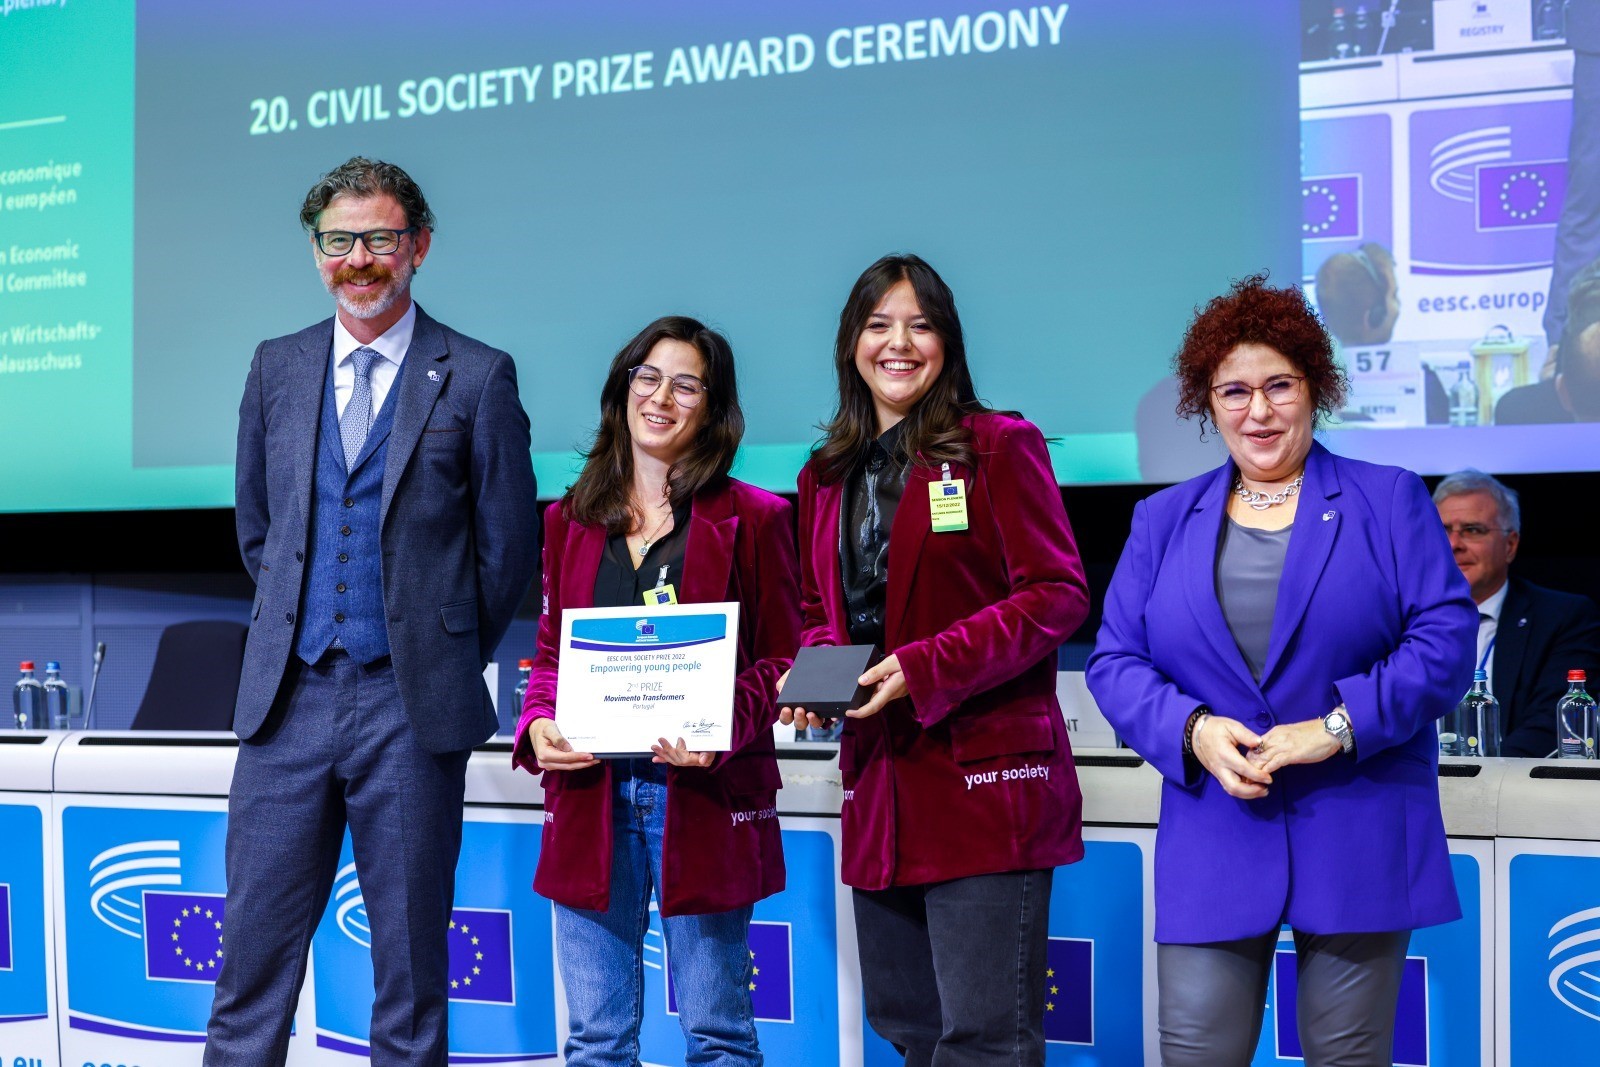 Movimento Transformers distinguido com prémio europeu para a sociedade civil